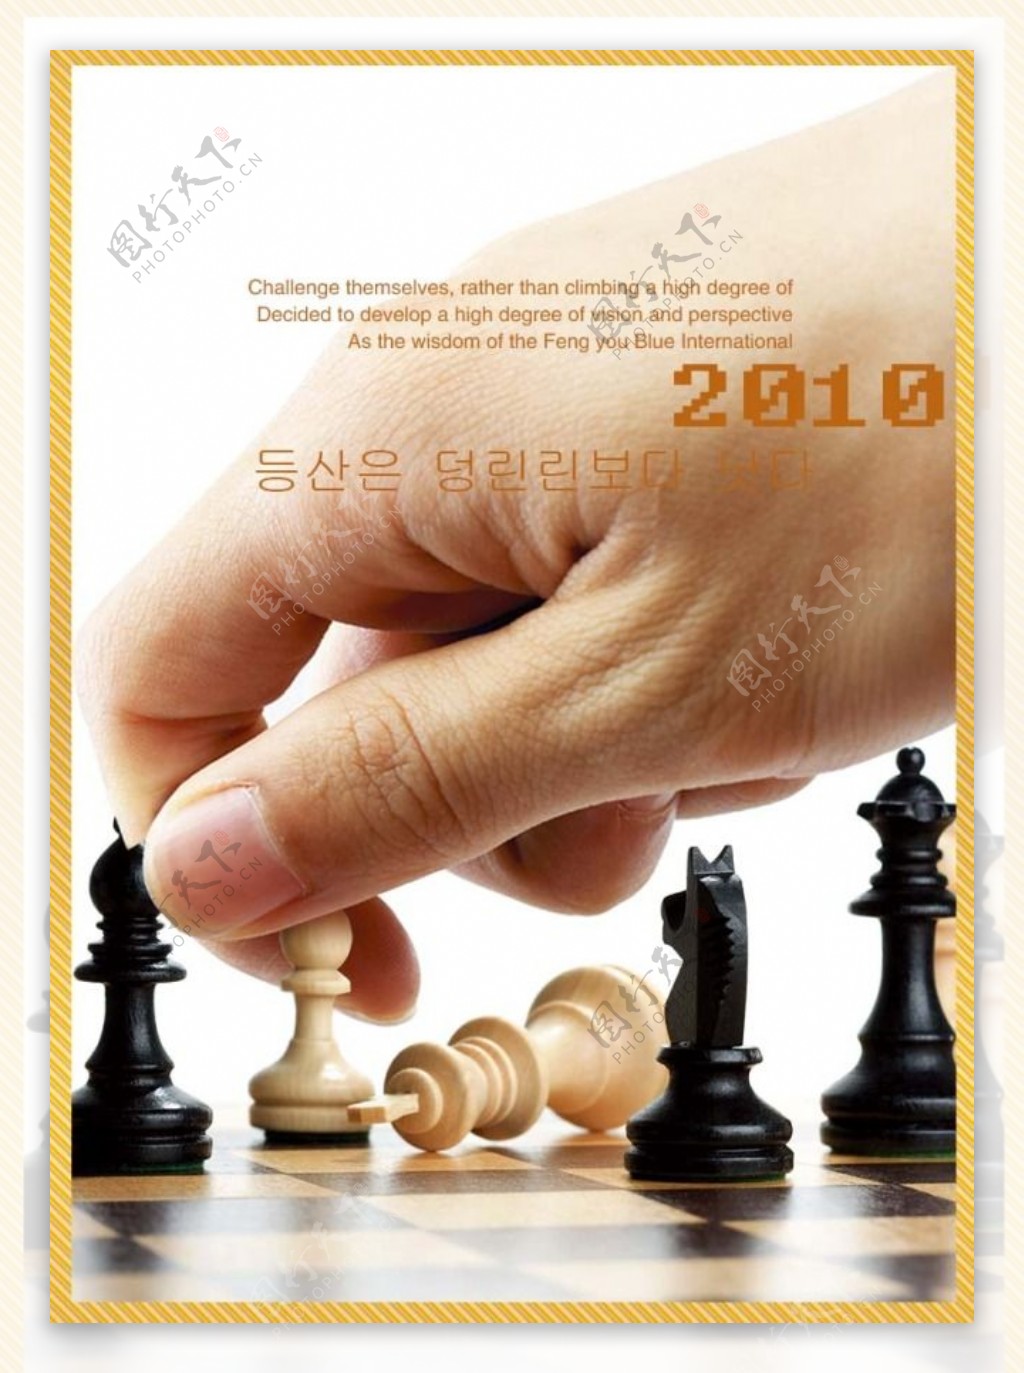 文化展板设计下棋国际象棋